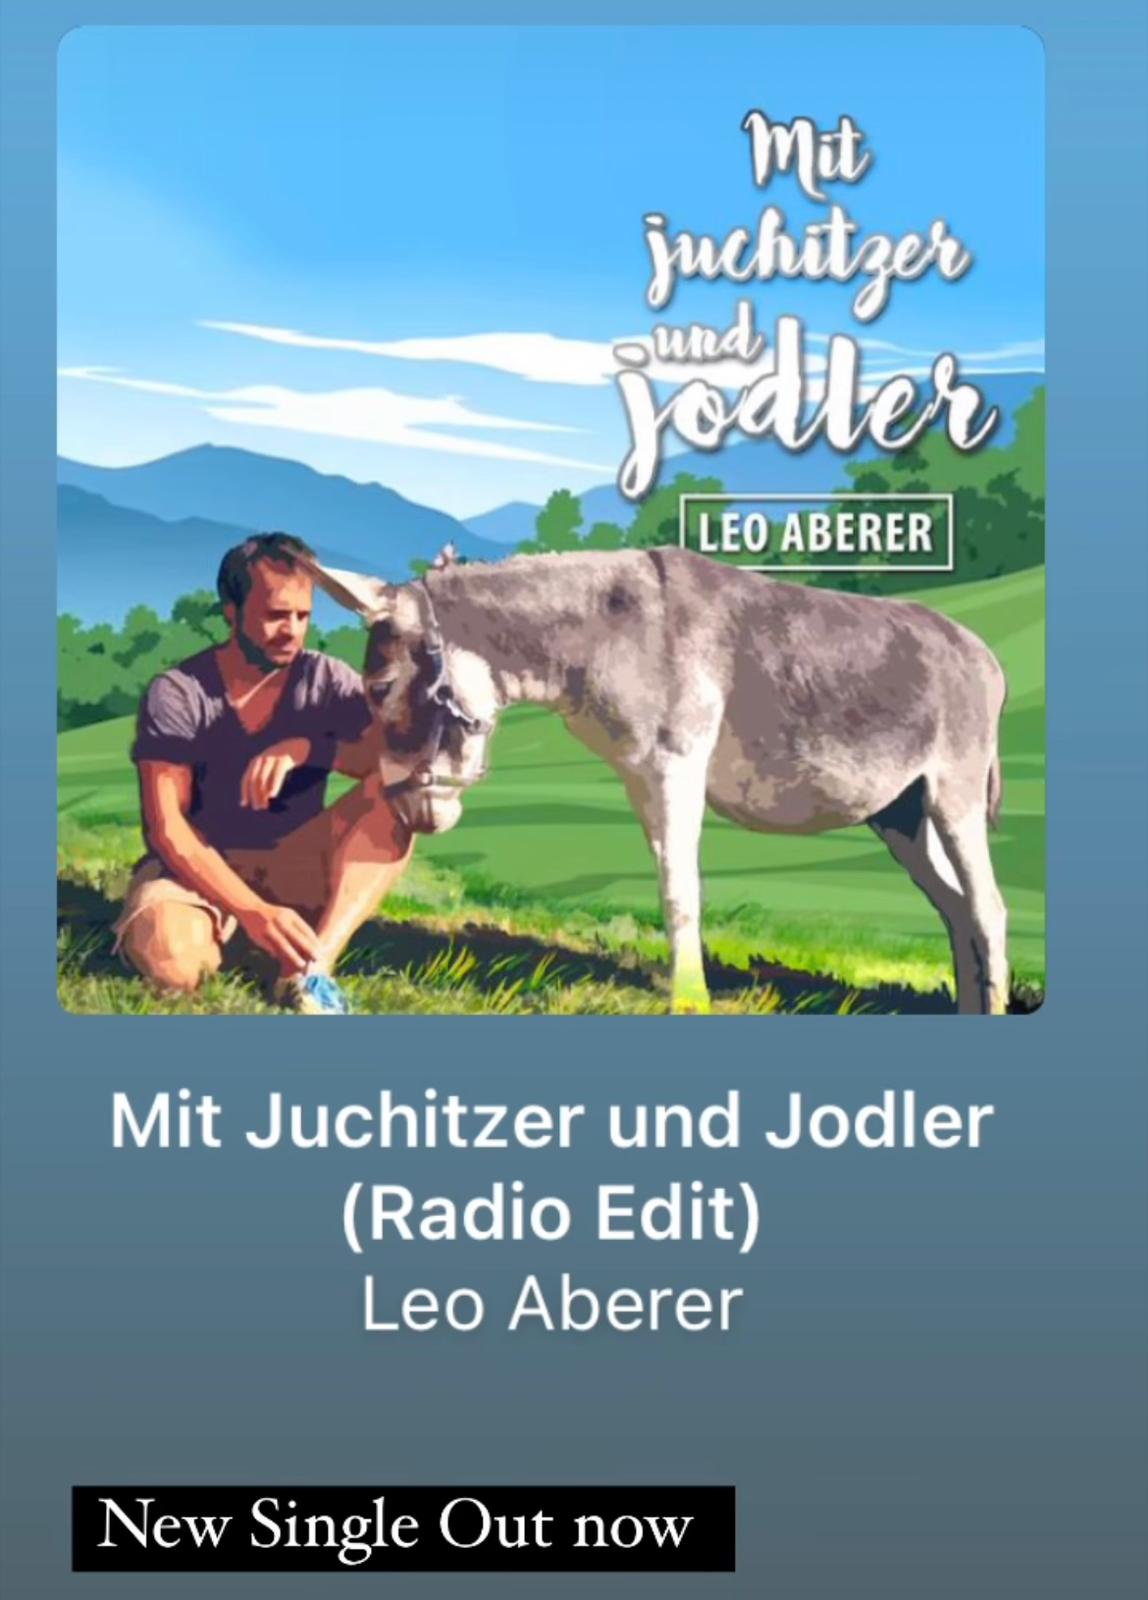 leoaberer_new-single_mit-juchitzer-und-jodler